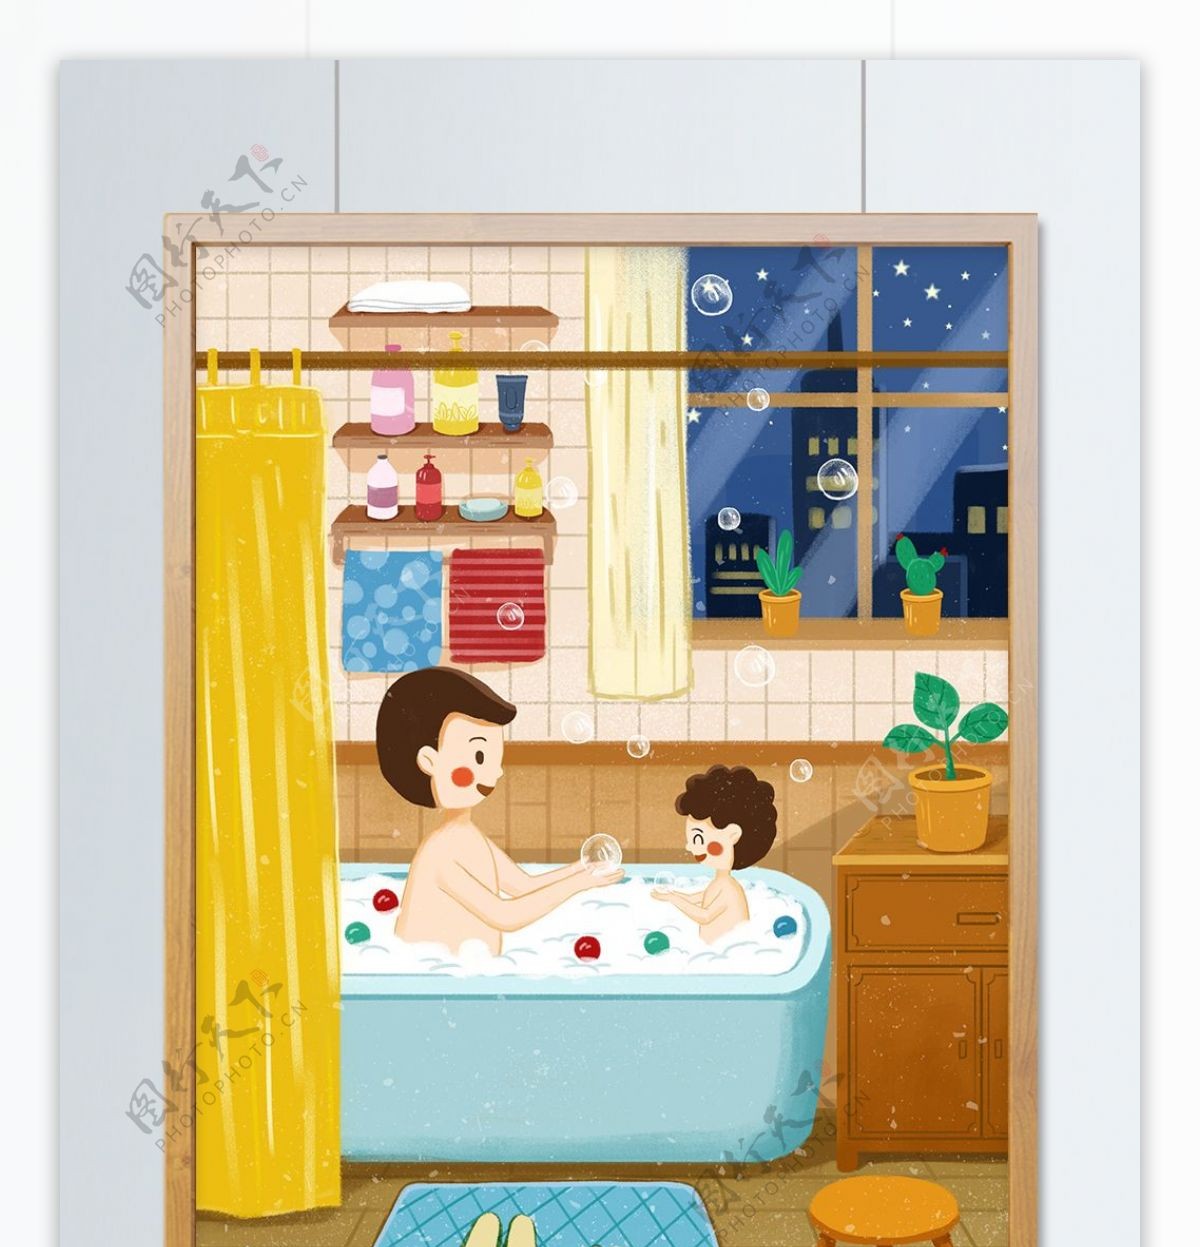 父亲节爸爸和儿子一起沐浴欢乐时光插画